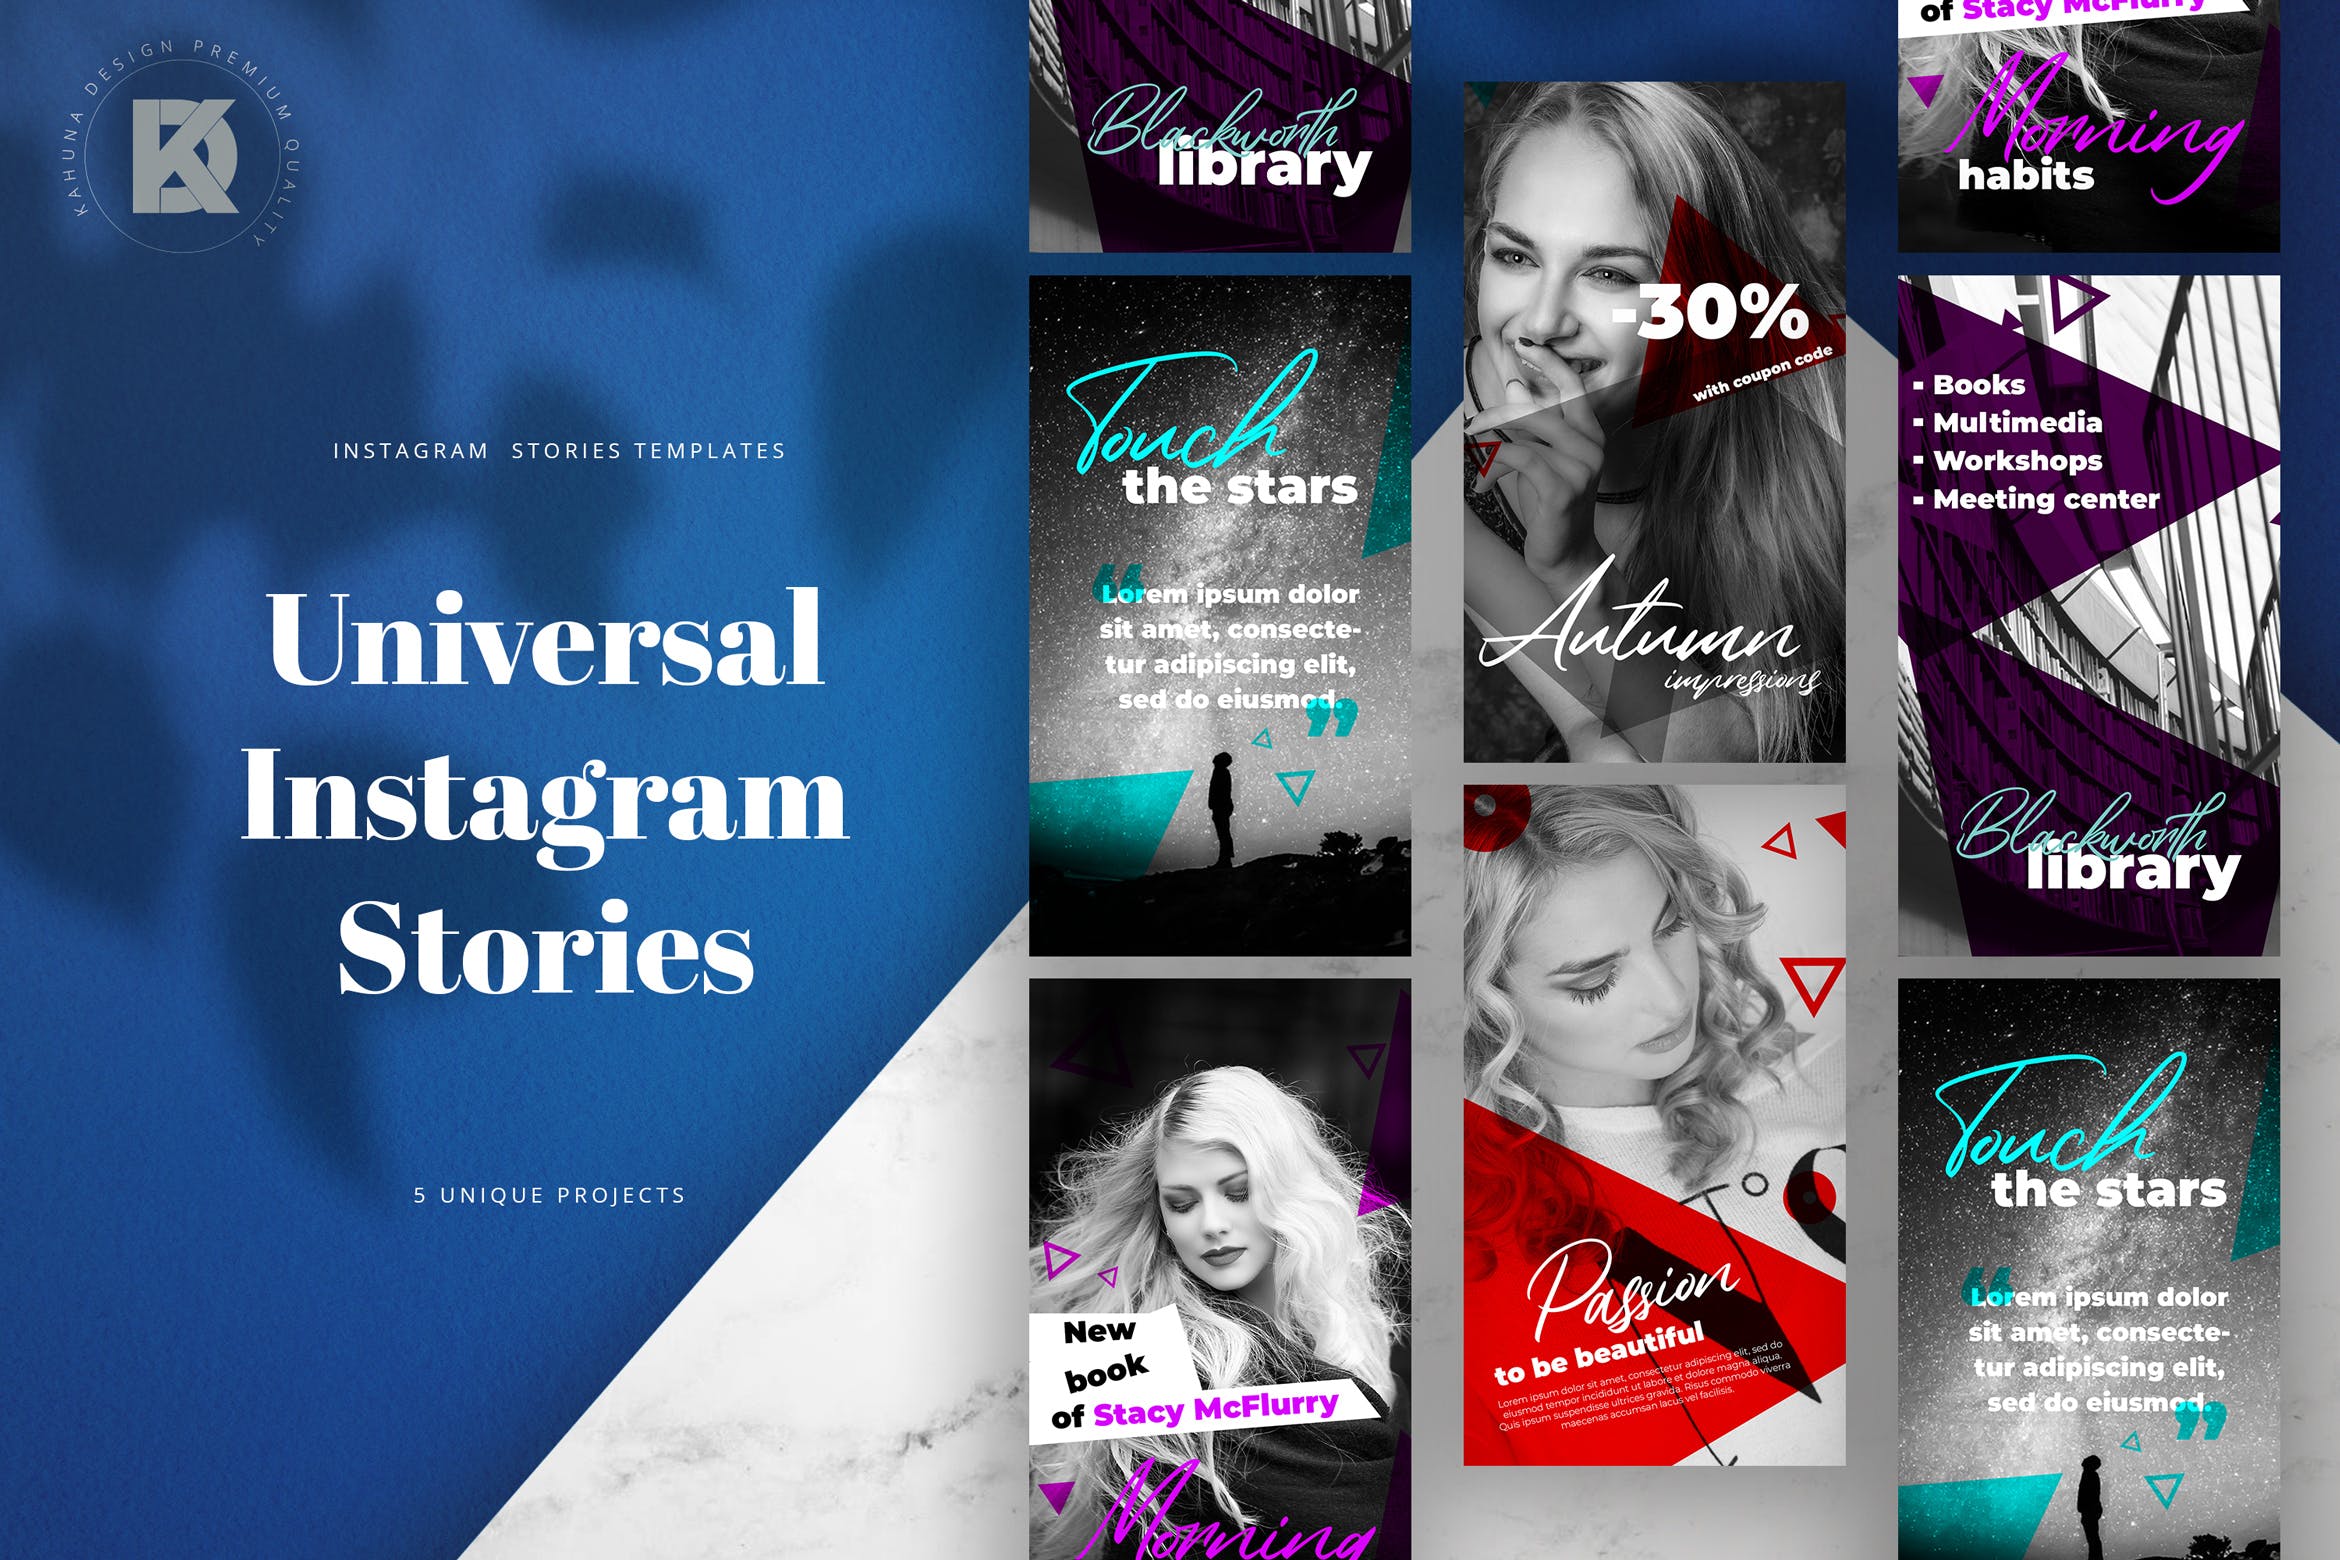 多用途社交品牌营销Instagram广告设计素材 Instagram Stories Universal Banners Pack插图